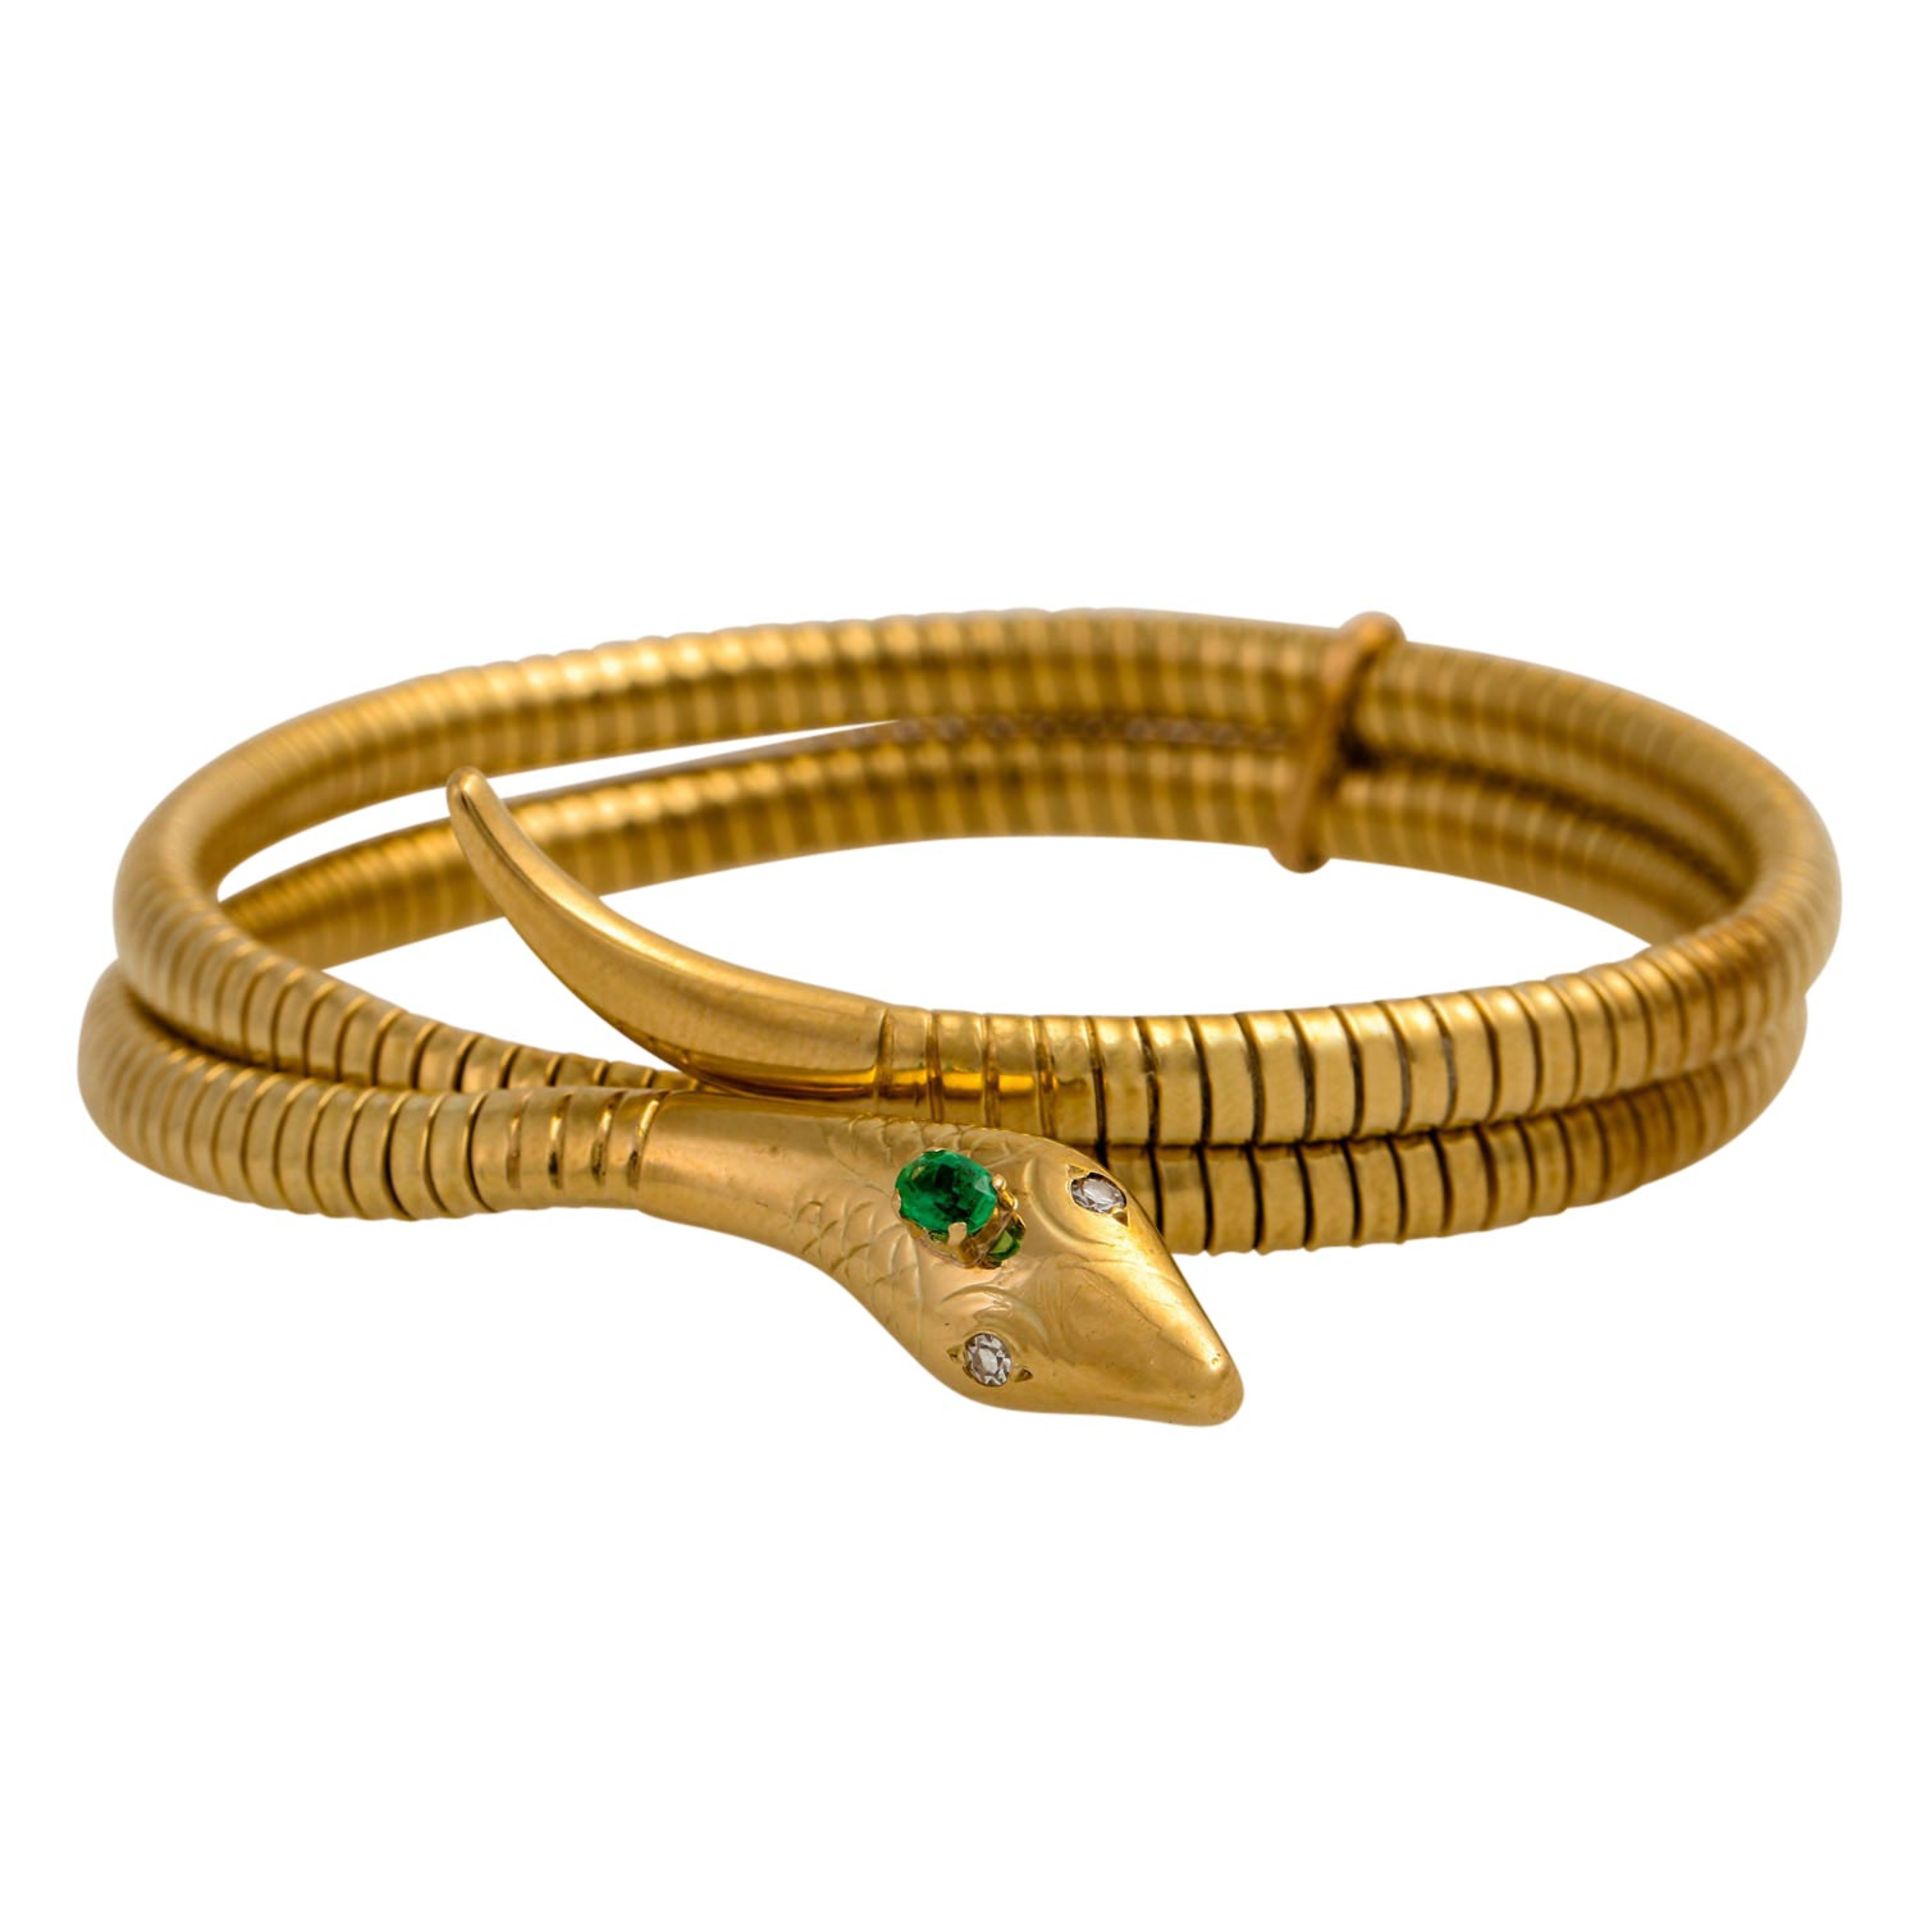 Armreif "Schlange" mit grünem Imitationsstein sowie 2 Diamanten von zus. ca. 0.04 ct,